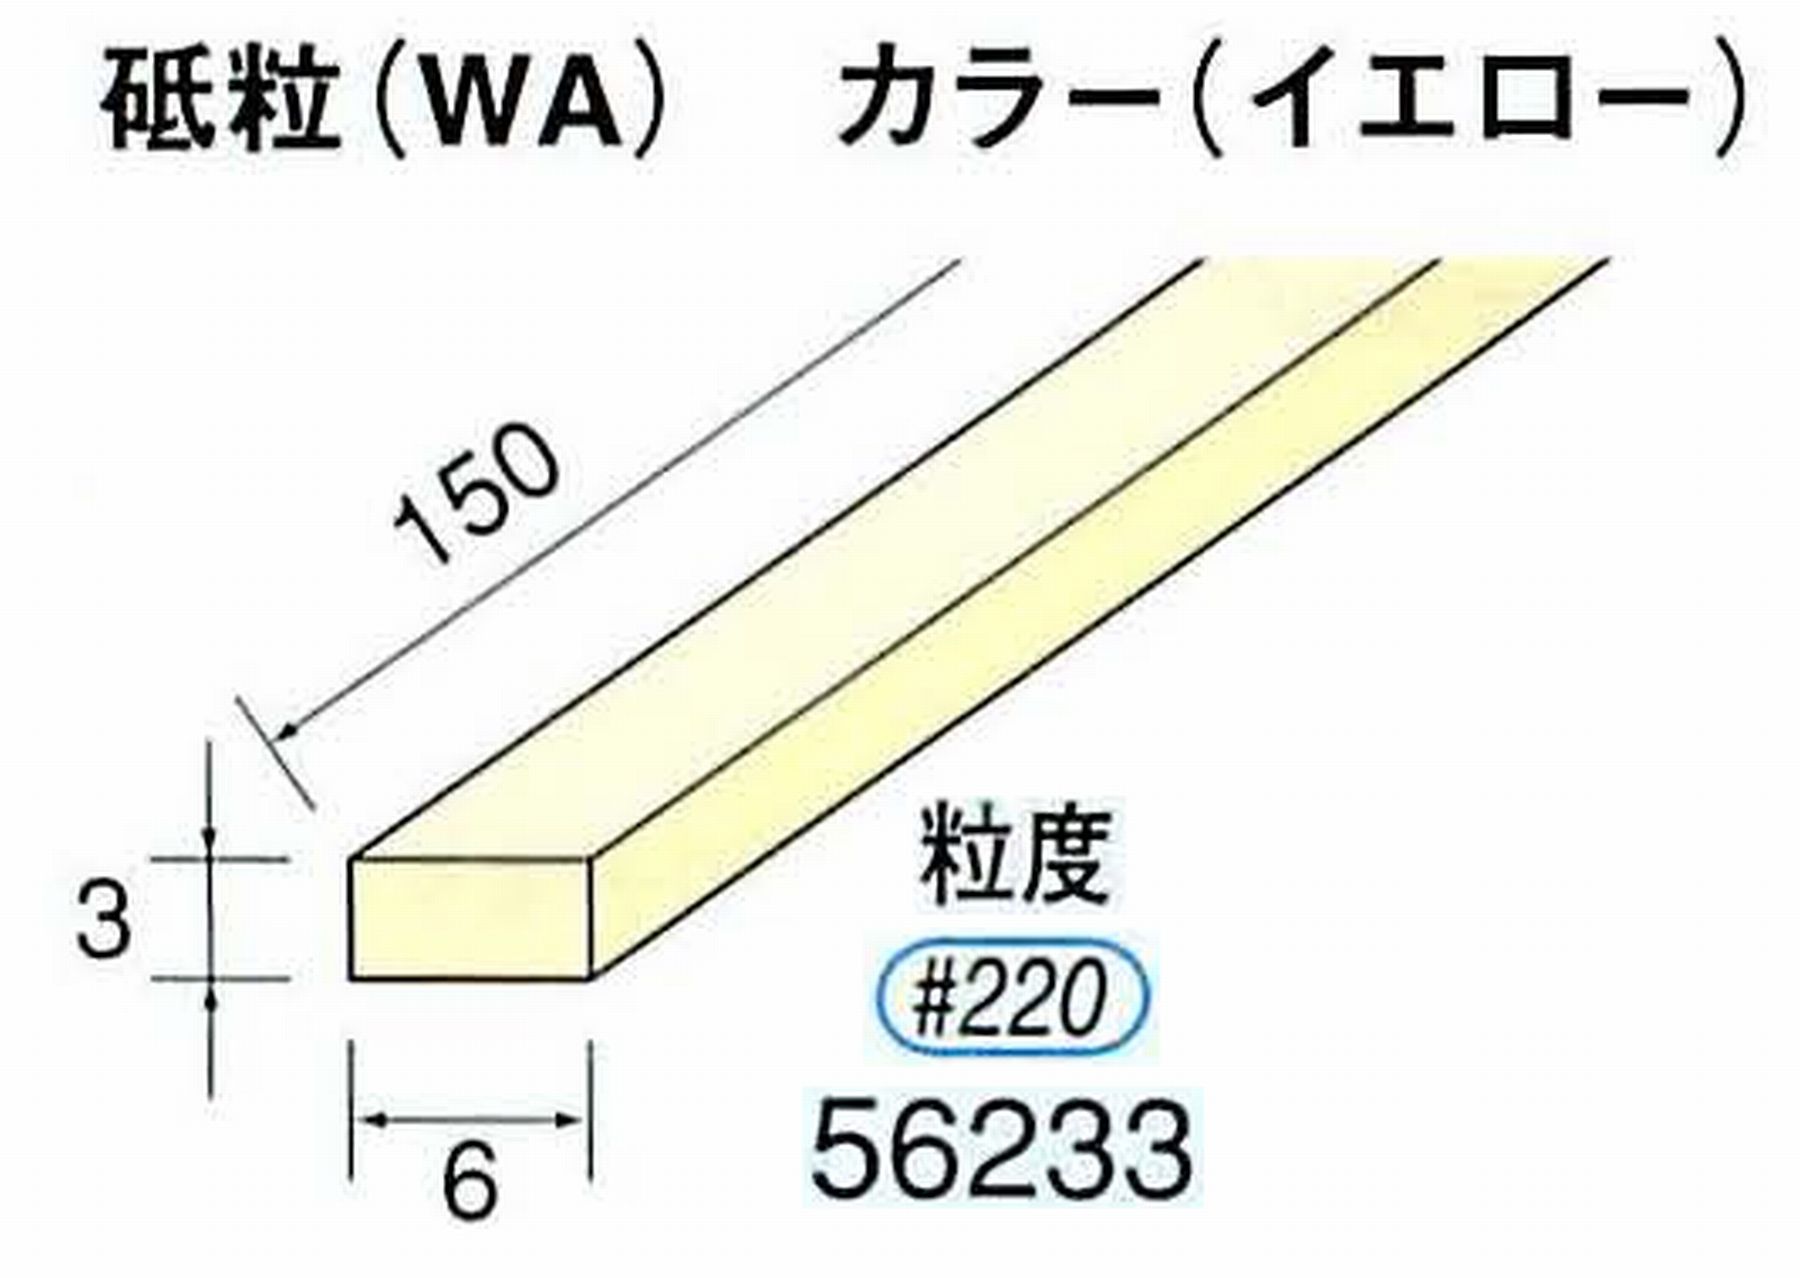 ナカニシ/NAKANISHI スティック砥石 イエロー・フィニッシュシリーズ 砥粒(WA) 56233